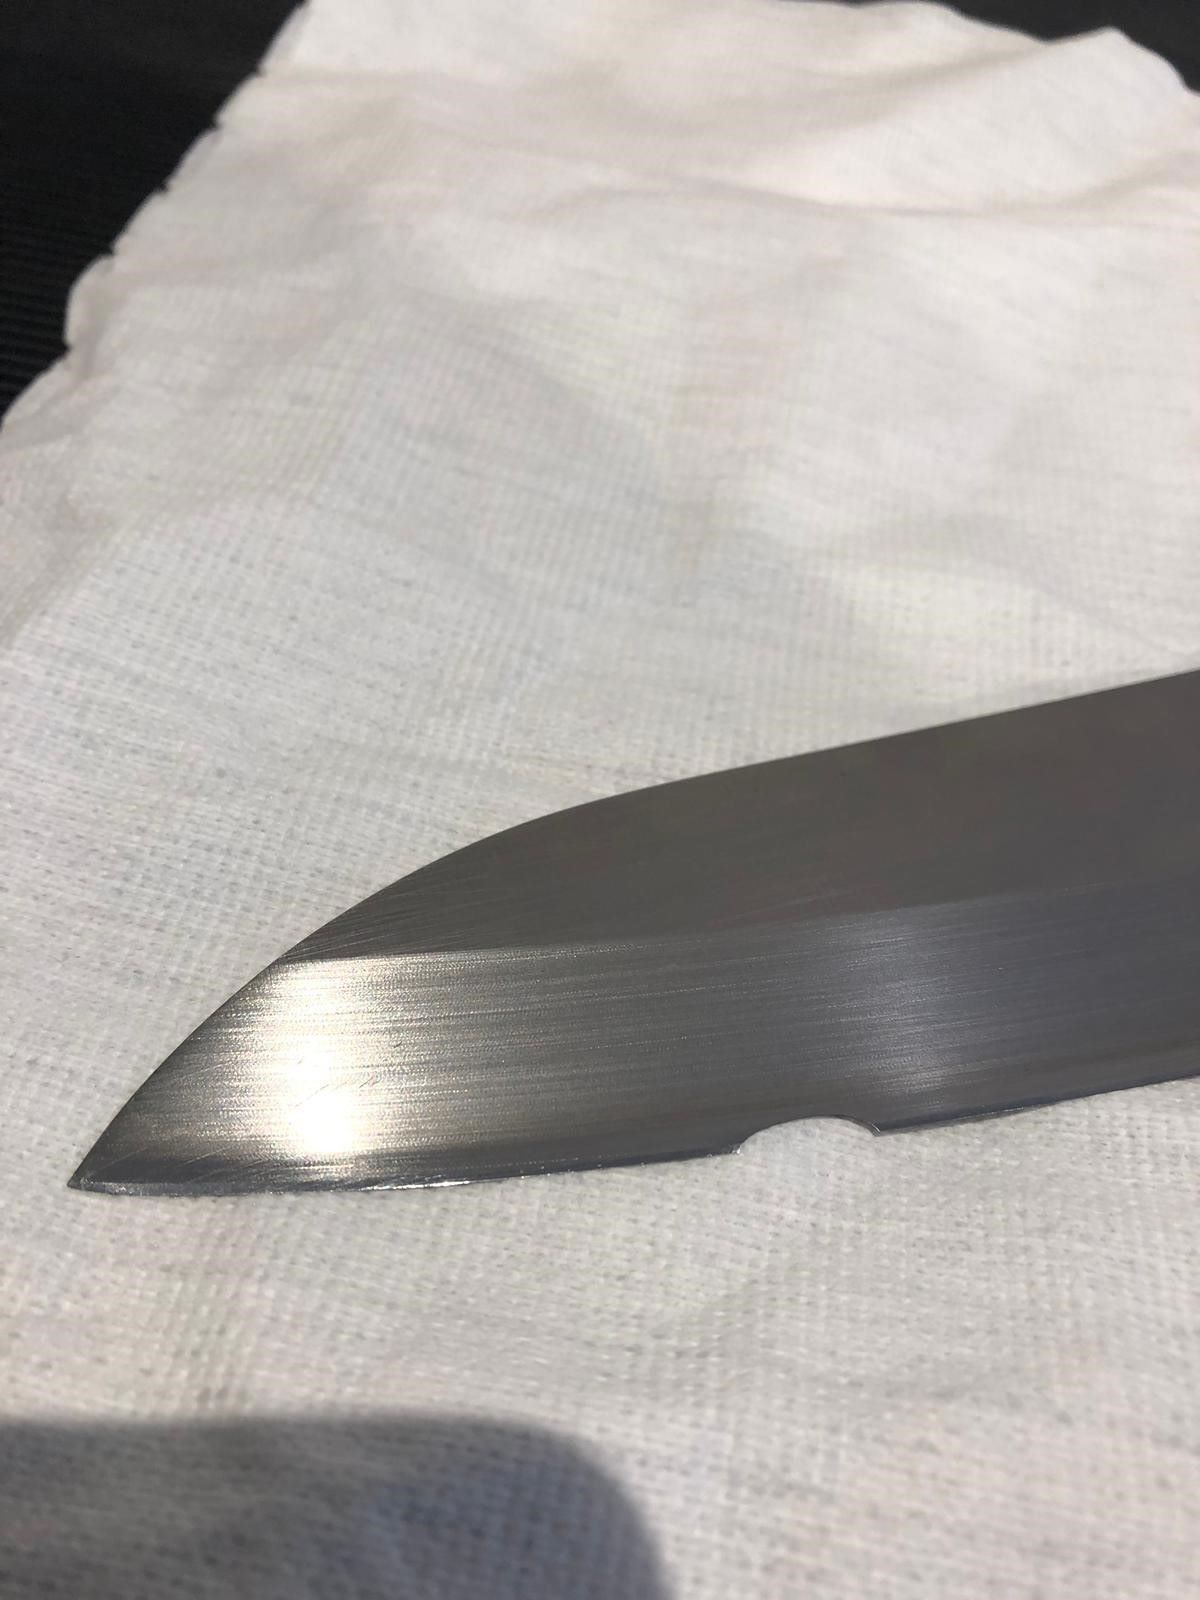 broken knife